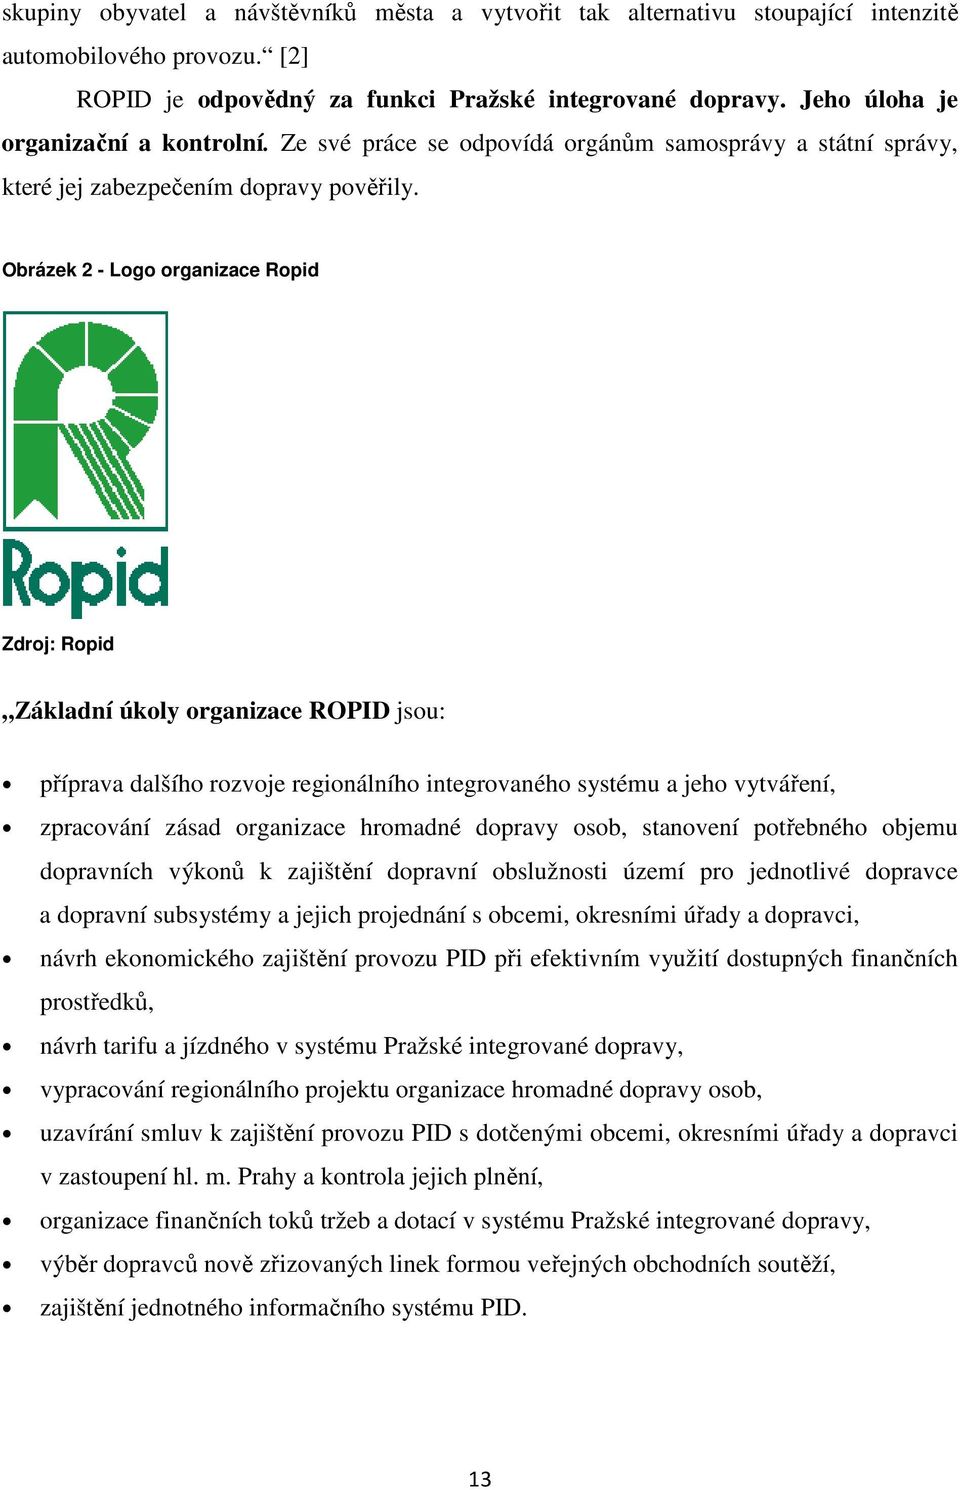 Obrázek 2 - Logo organizace Ropid Zdroj: Ropid Základní úkoly organizace ROPID jsou: příprava dalšího rozvoje regionálního integrovaného systému a jeho vytváření, zpracování zásad organizace hromadné